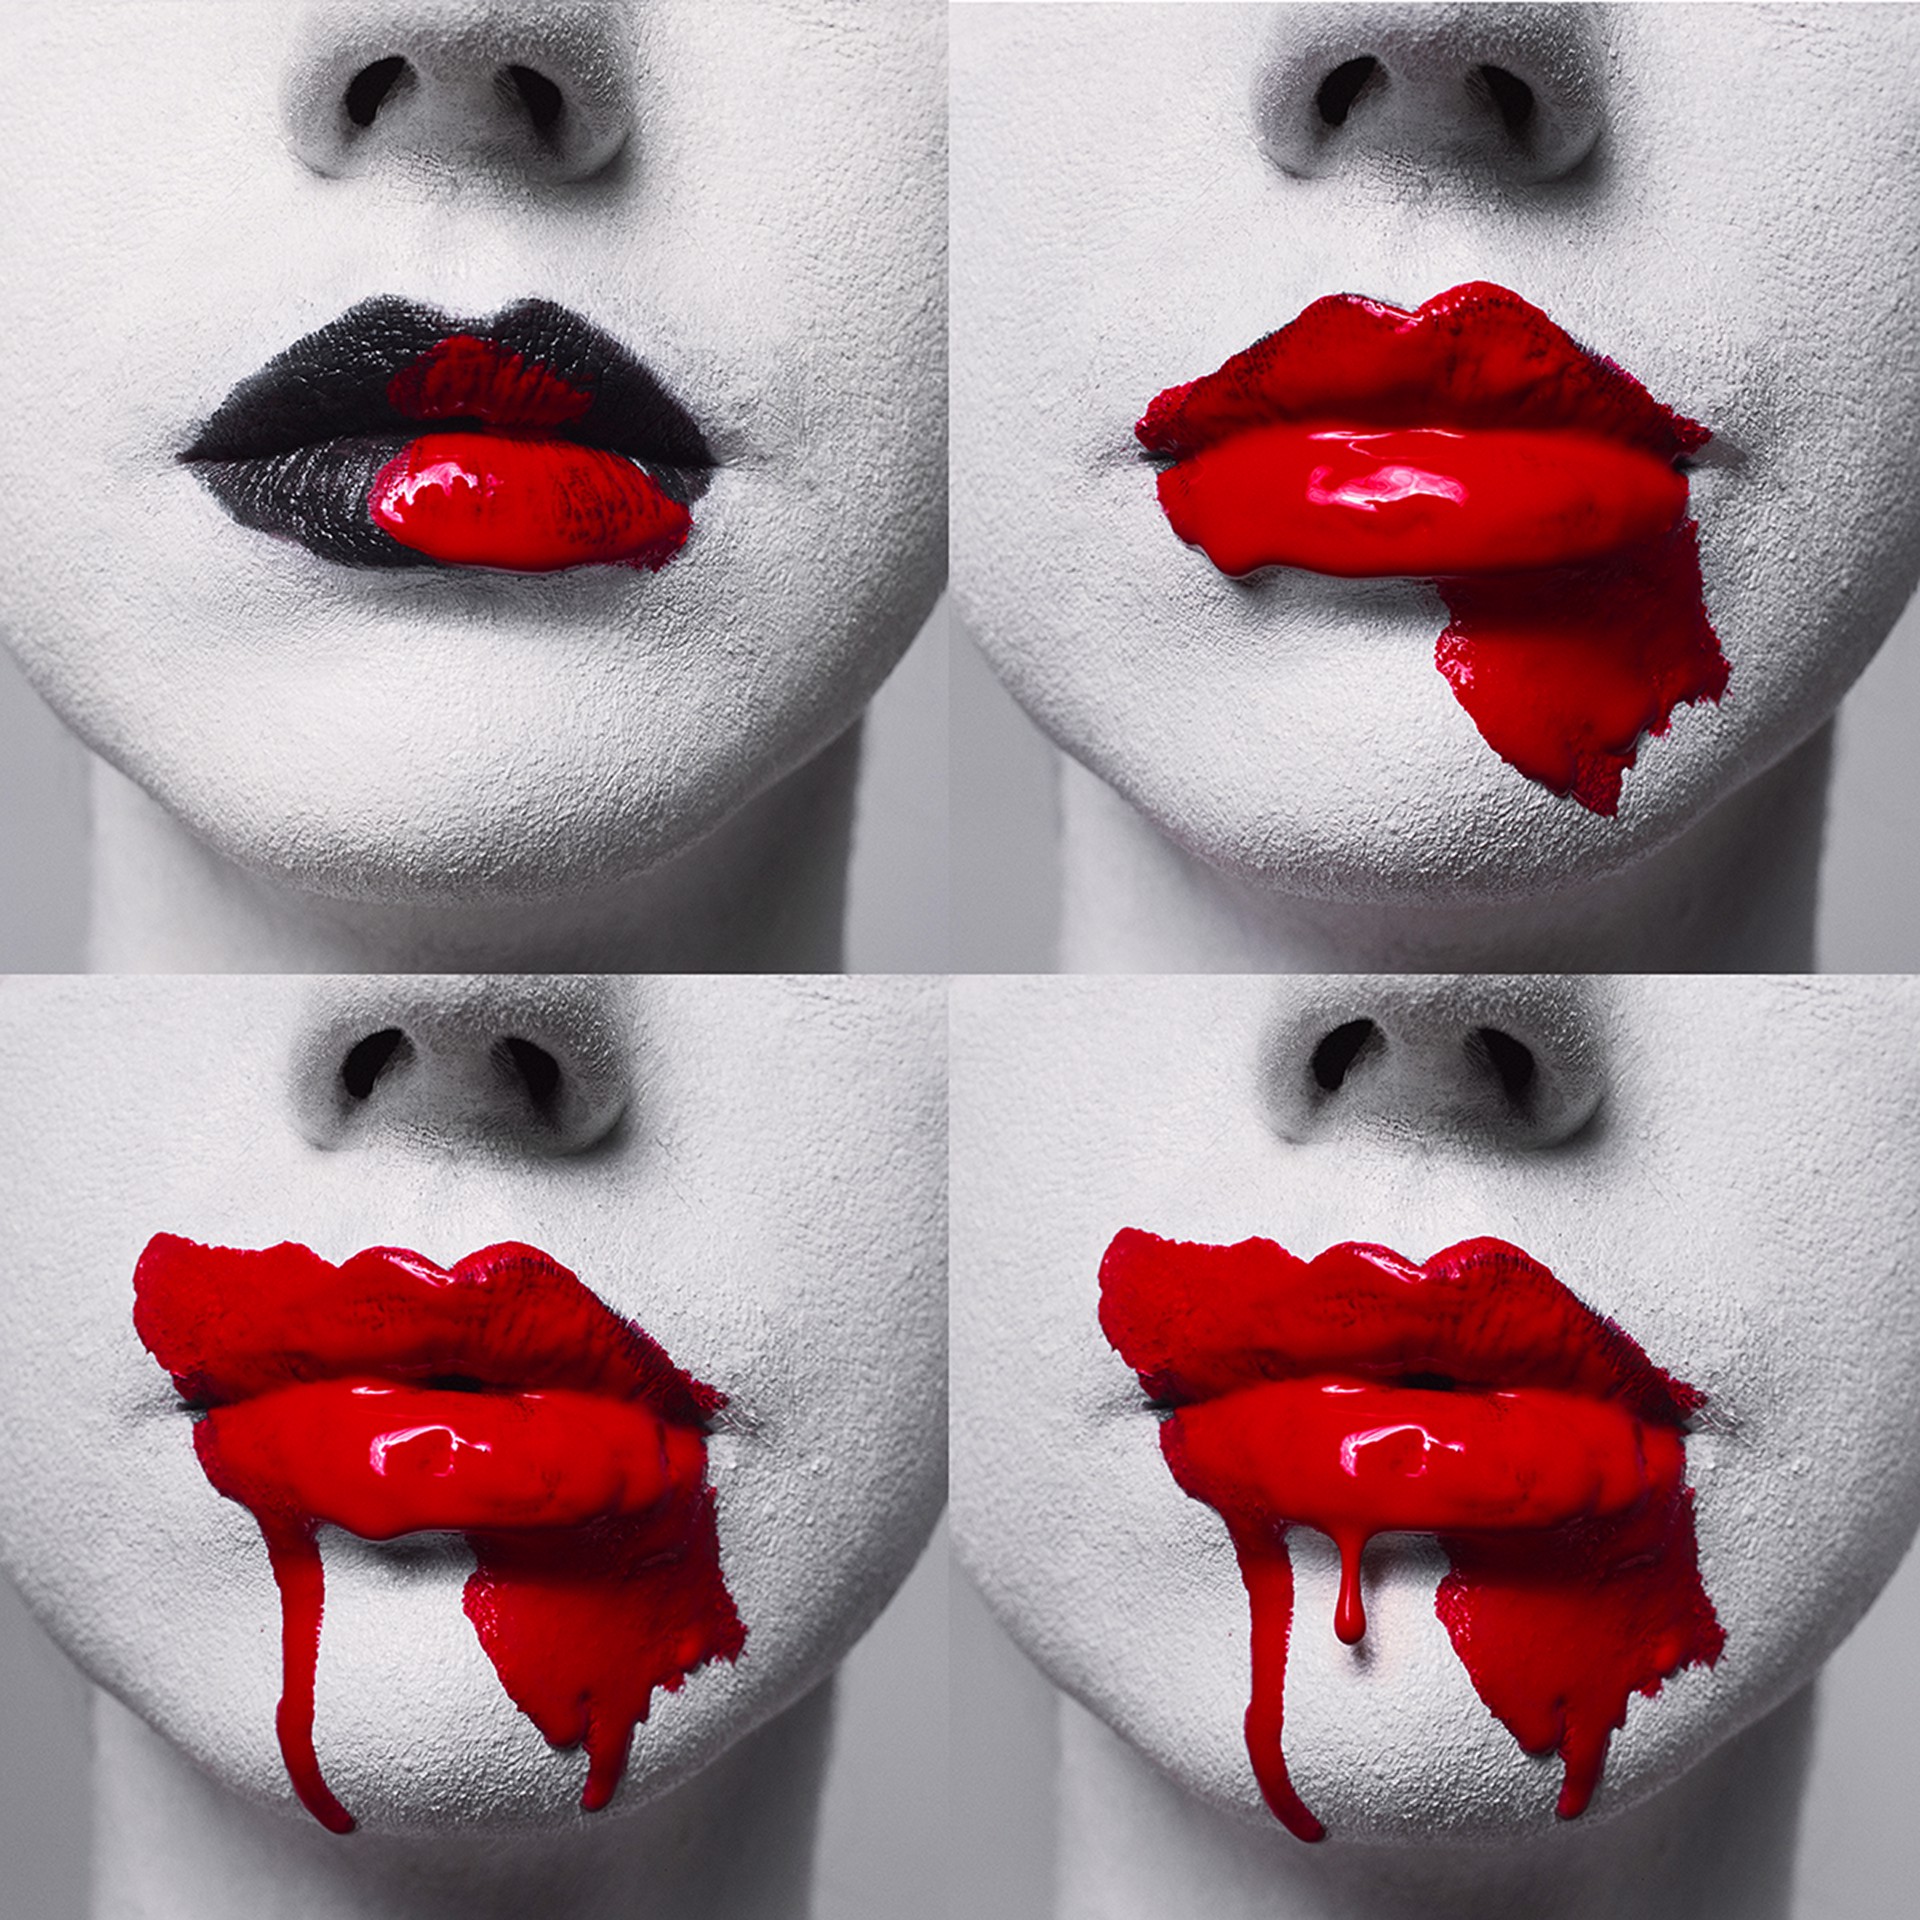 4 Lips by Tyler Shields